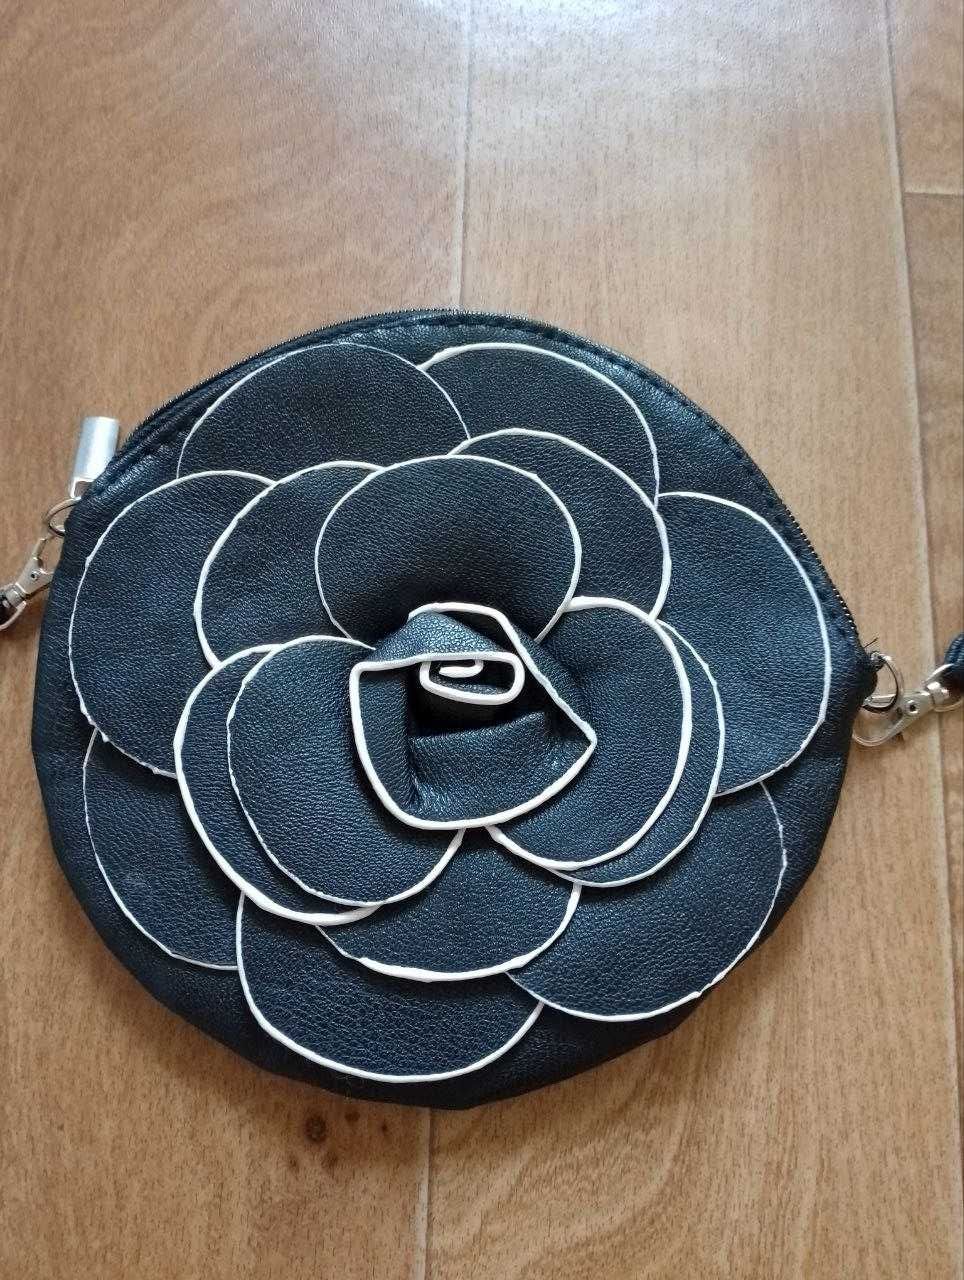 Кошелёк сумка клатч через плечо с огромным цветком чёрная